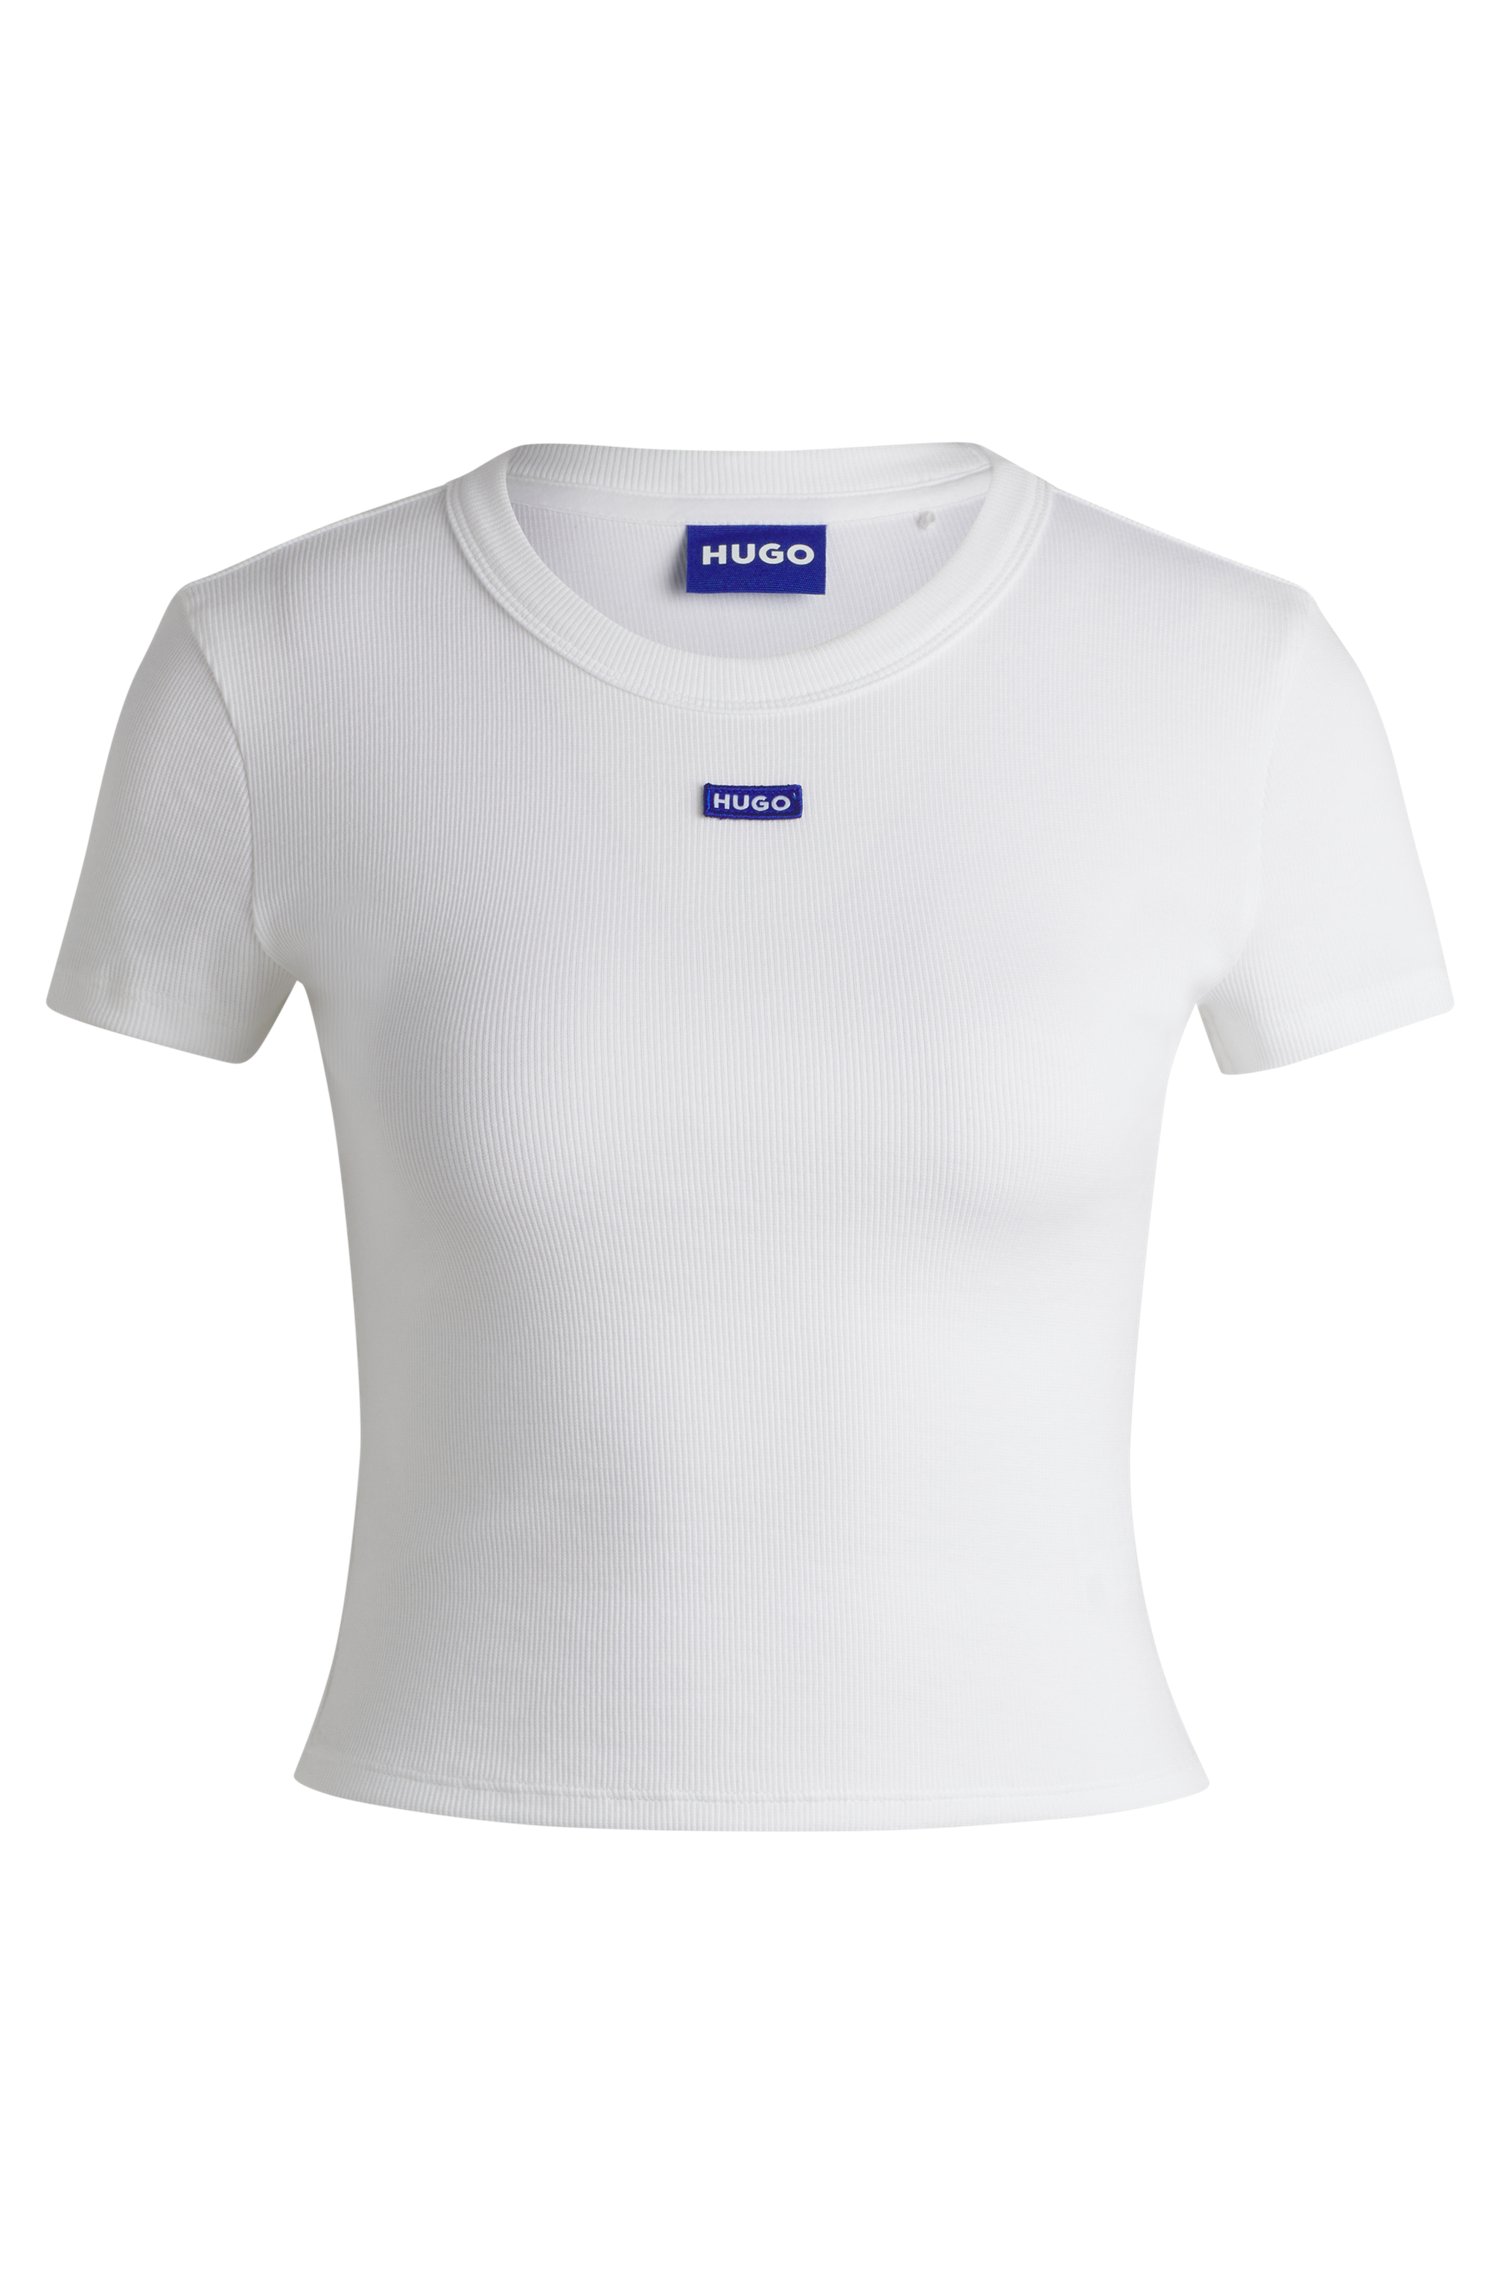 Camiseta slim fit de algodón elástico con etiqueta logo azul